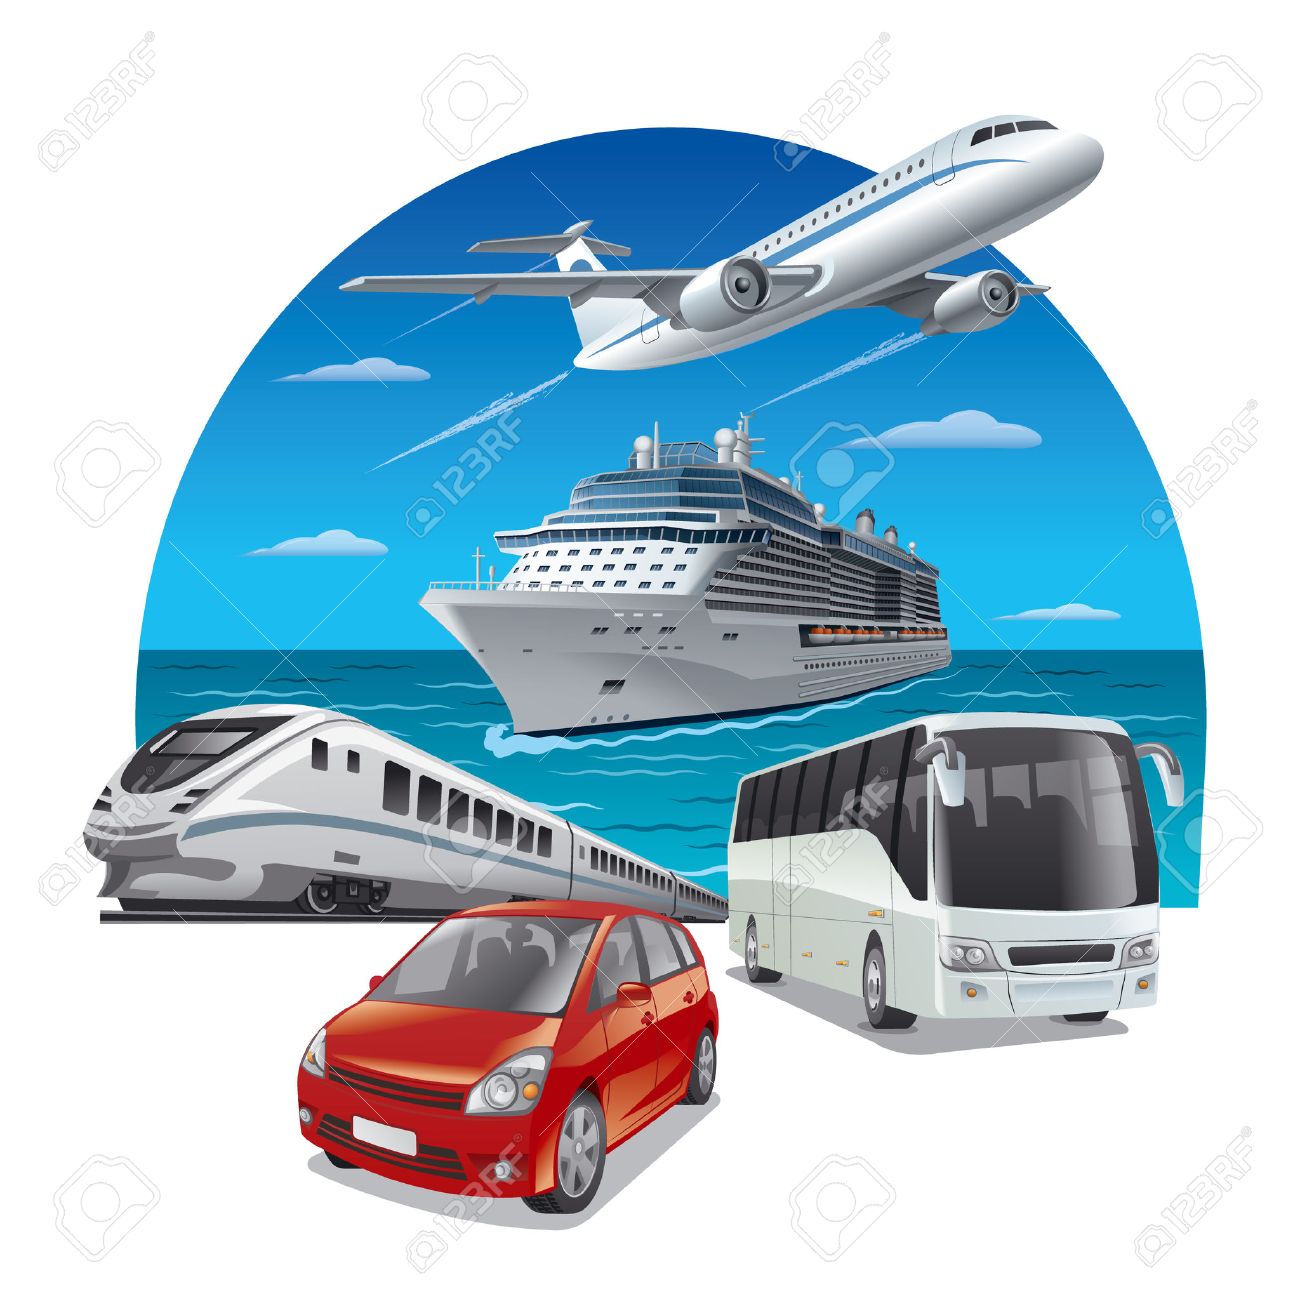 Transport Images